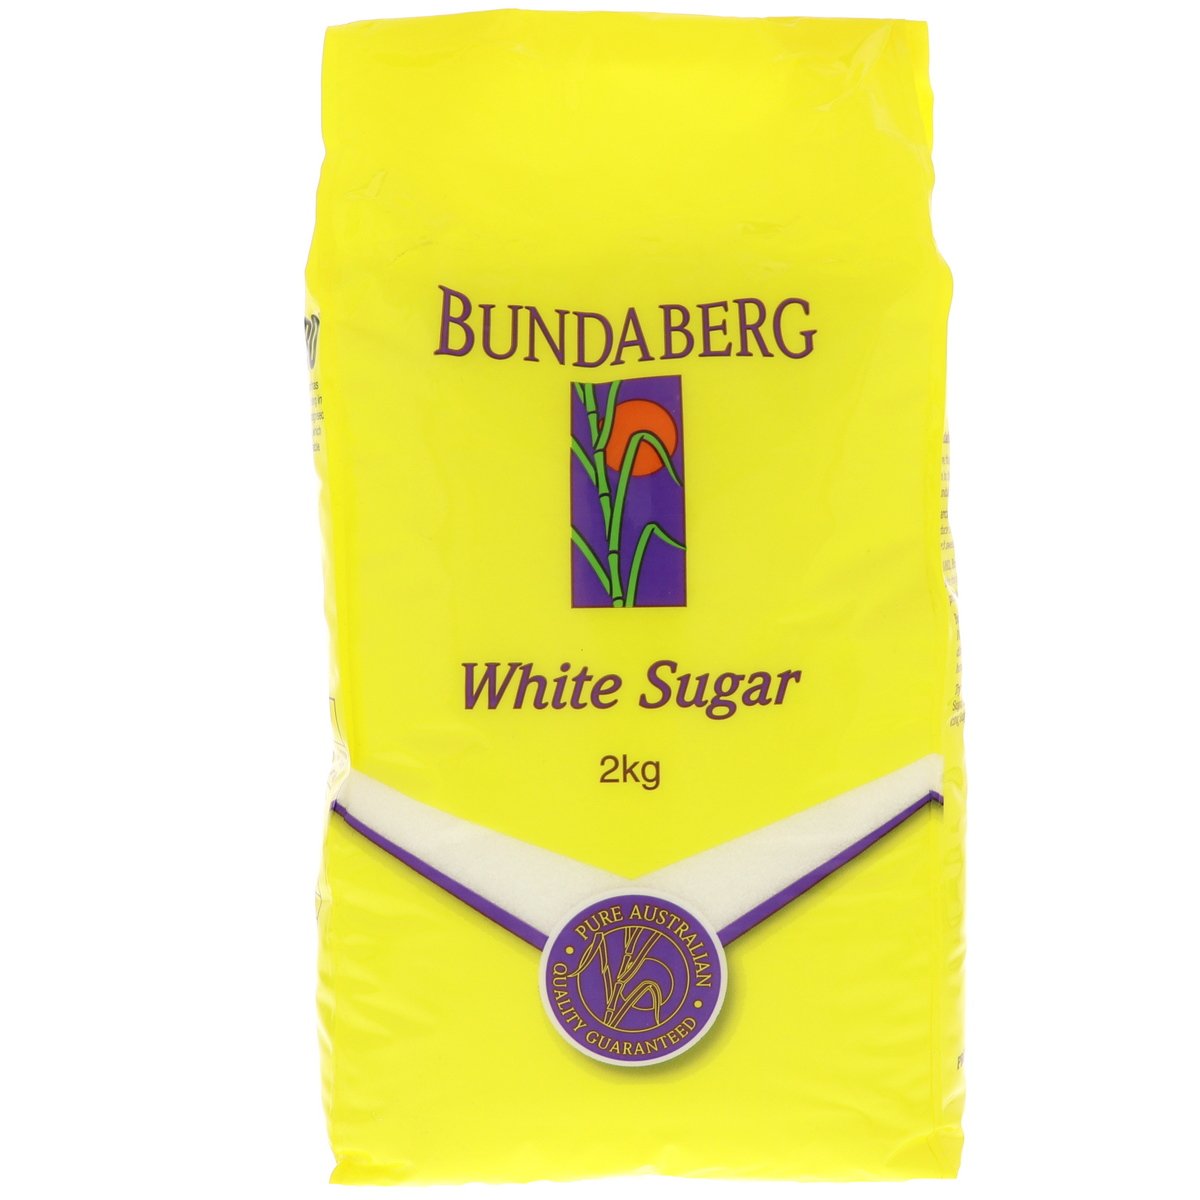 Bundaberg White Sugar 2 kg